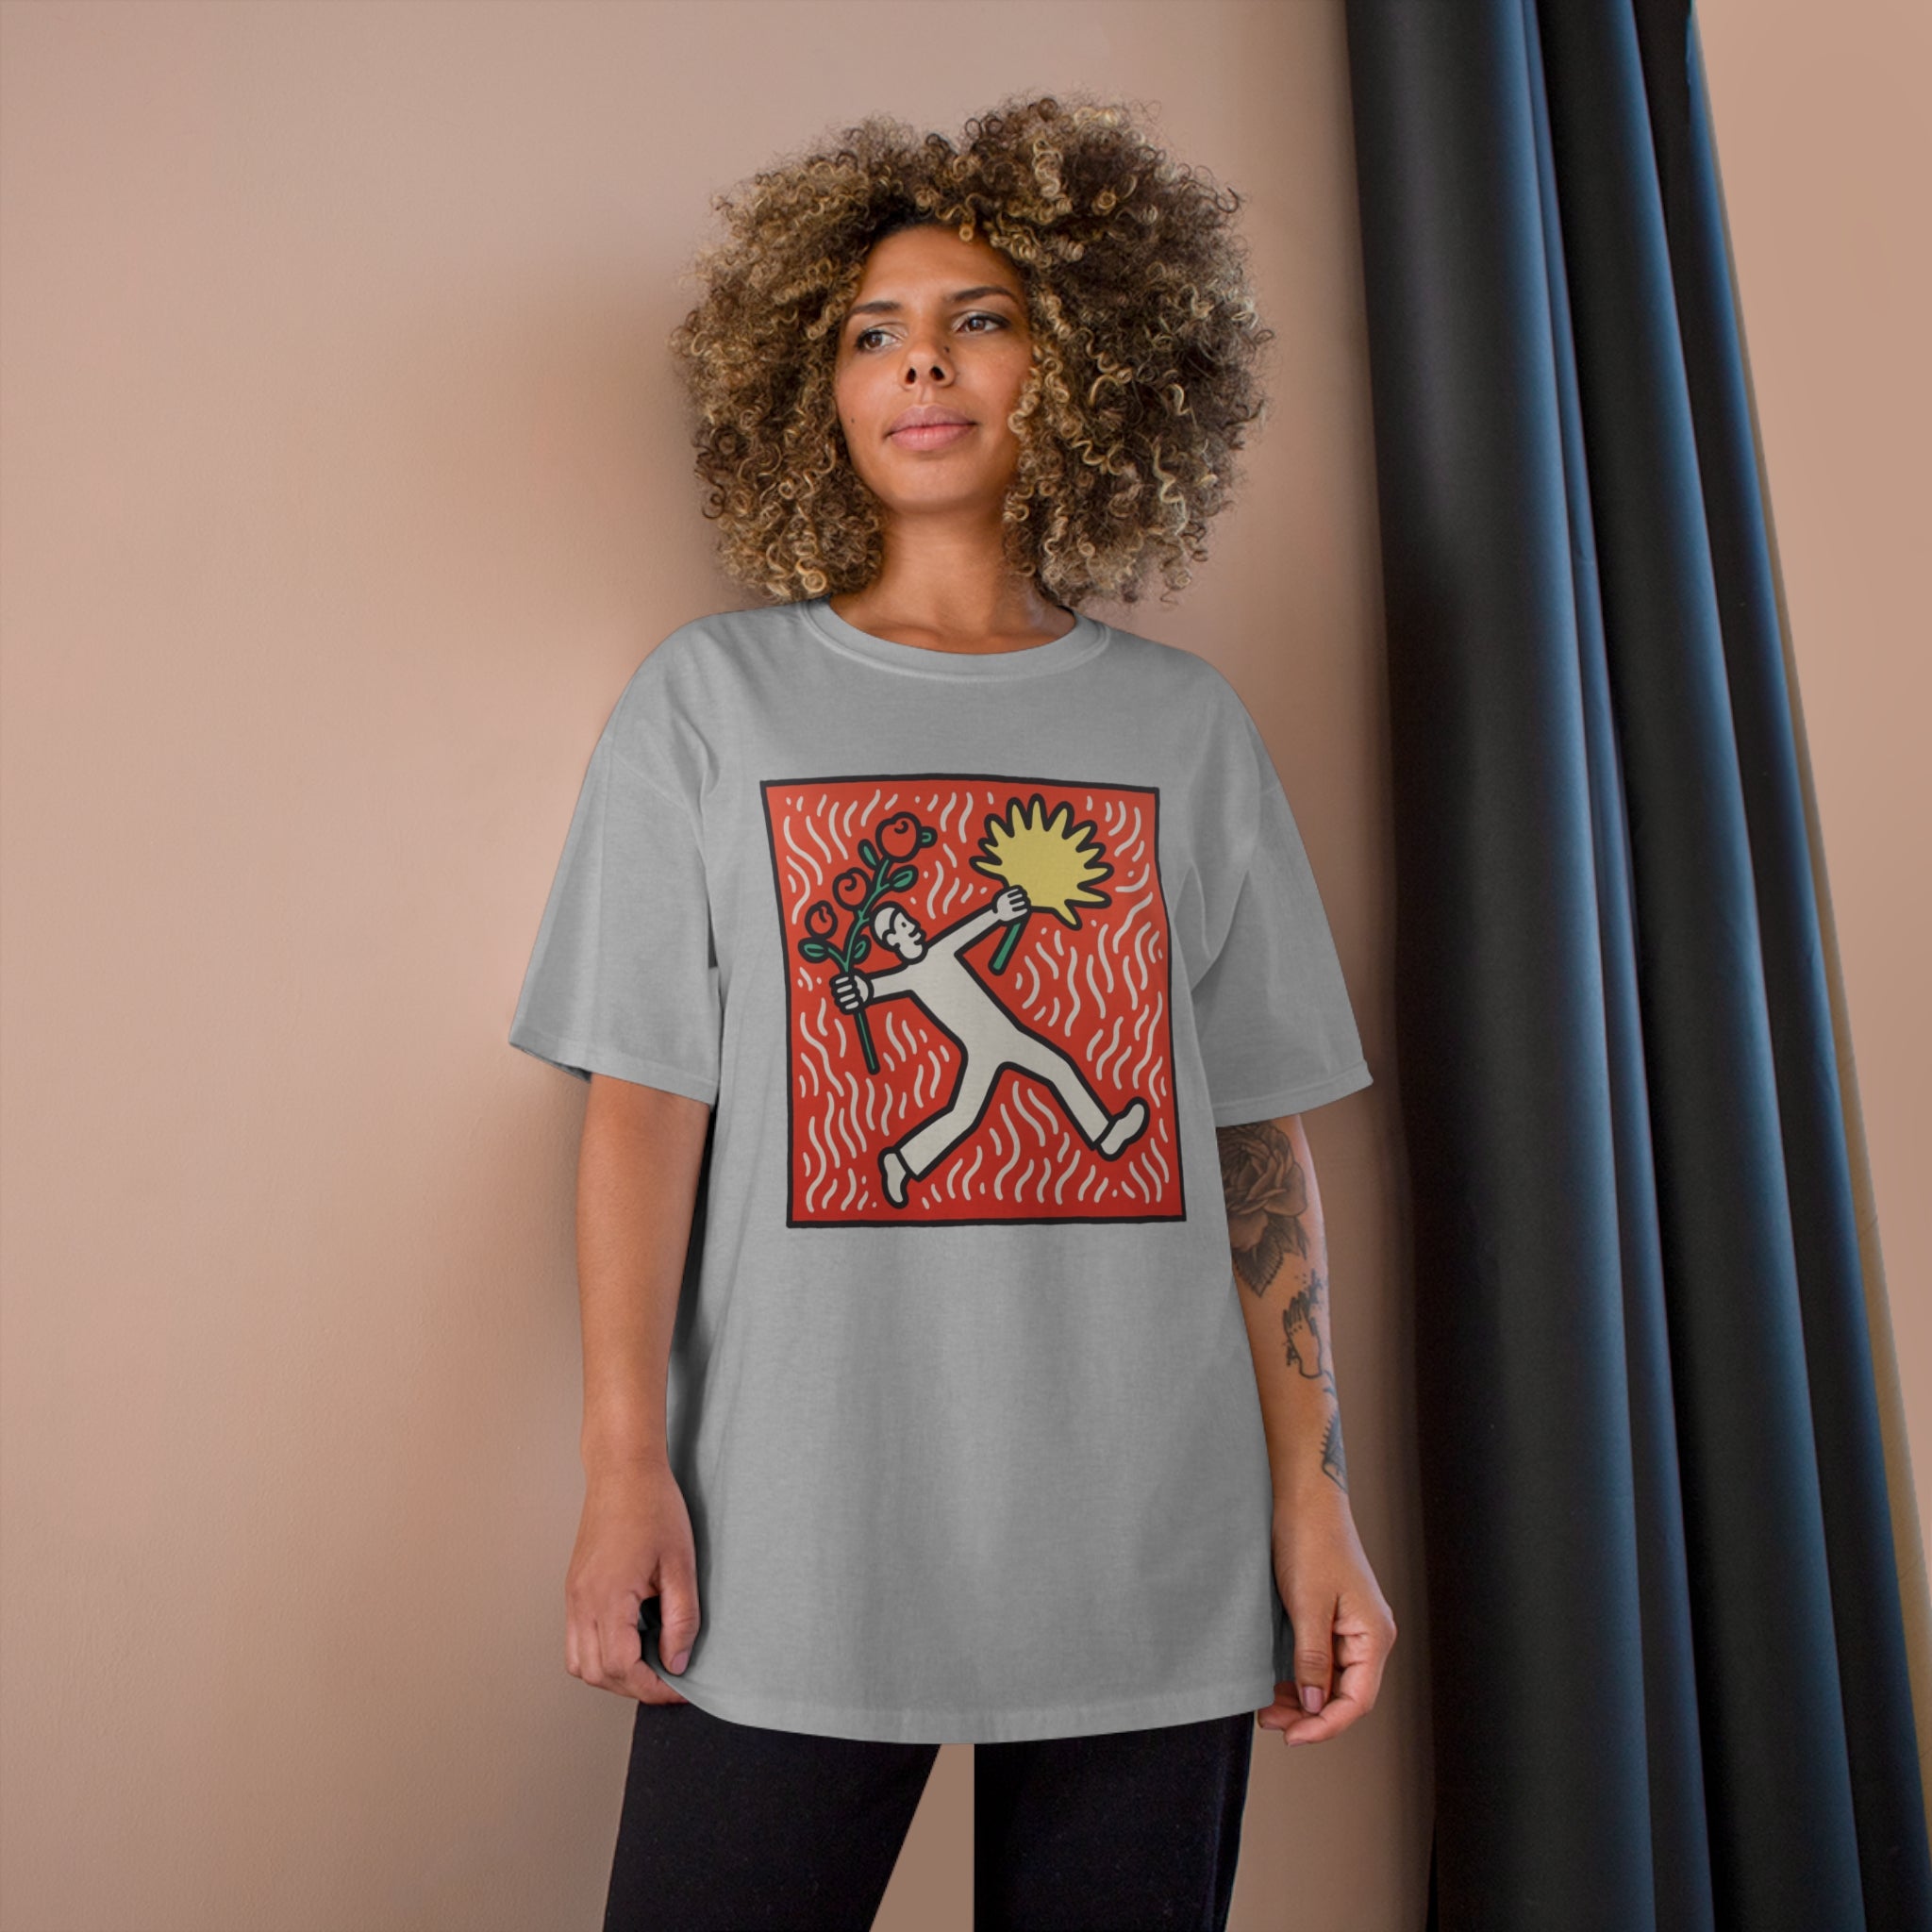 Harings Flower Thrower: Make art not war | T-Shirt